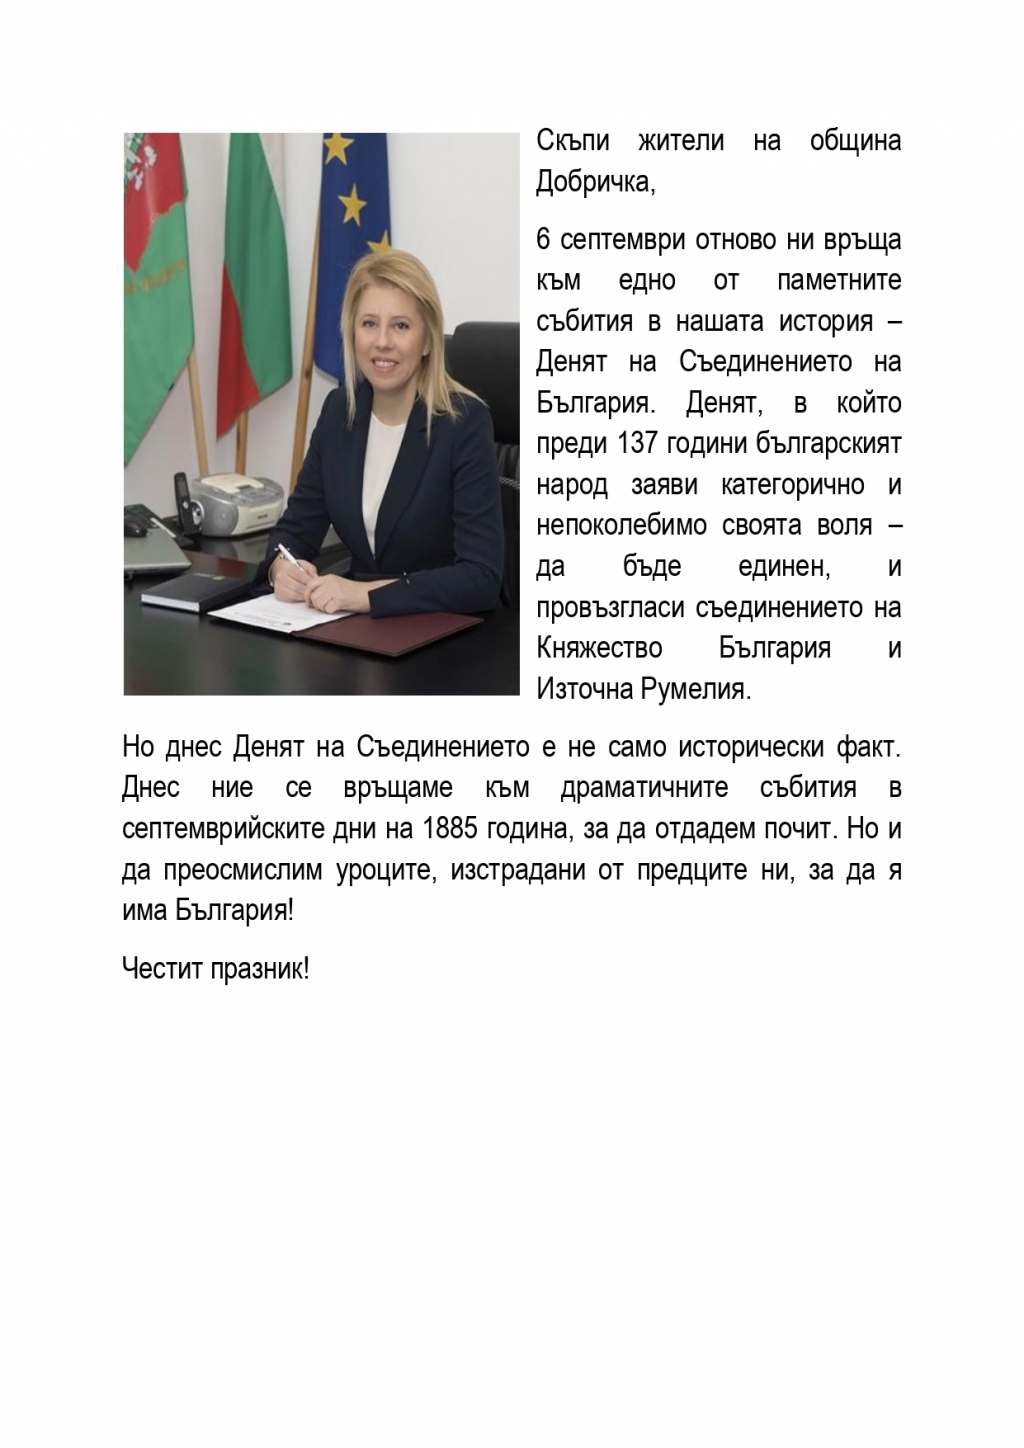 Кметът Соня Георгиева: Да преосмислим уроците, изстрадани от предците ни, за да я има България!